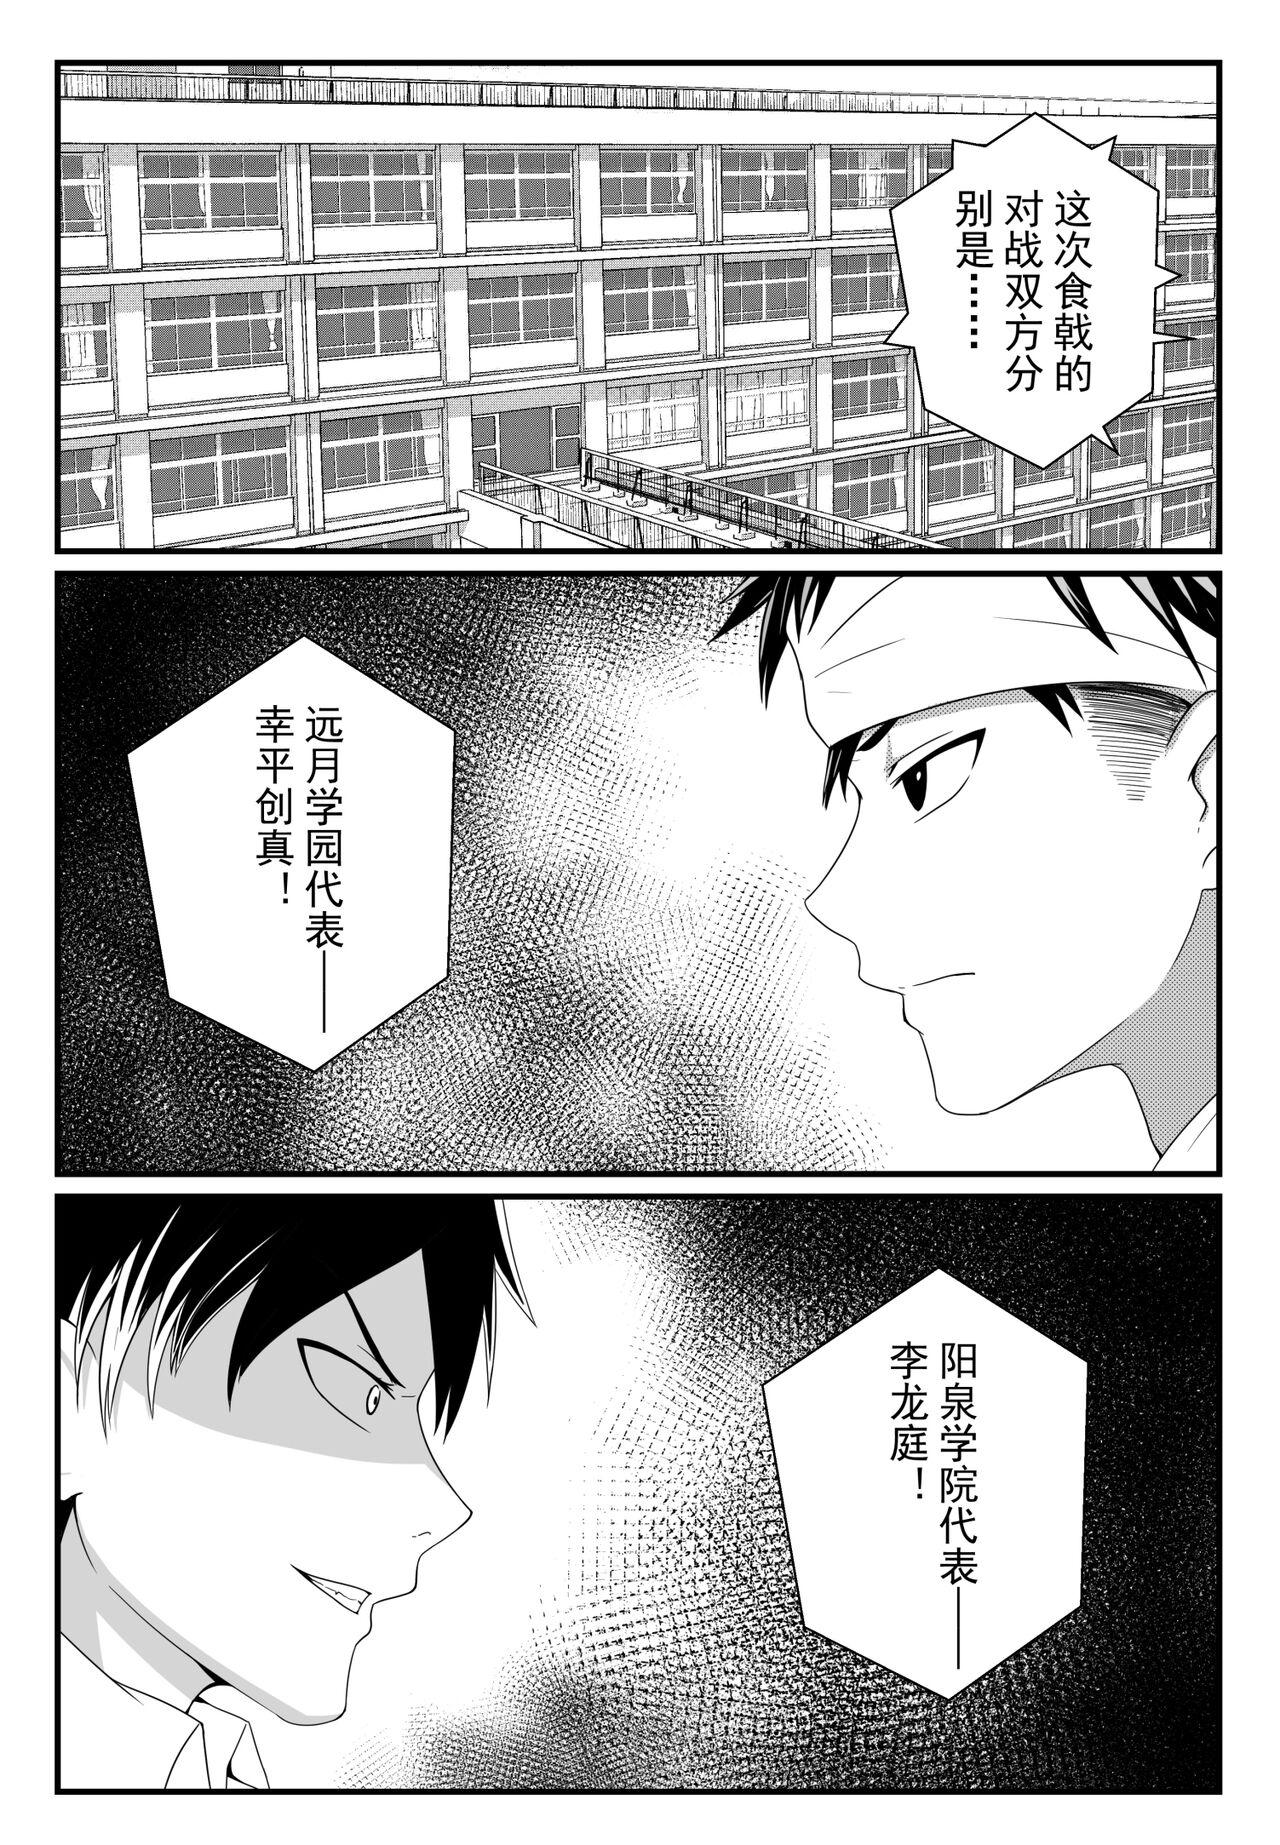 Amateursex 食戟之灵 - Shokugeki no soma Shemale - Page 4